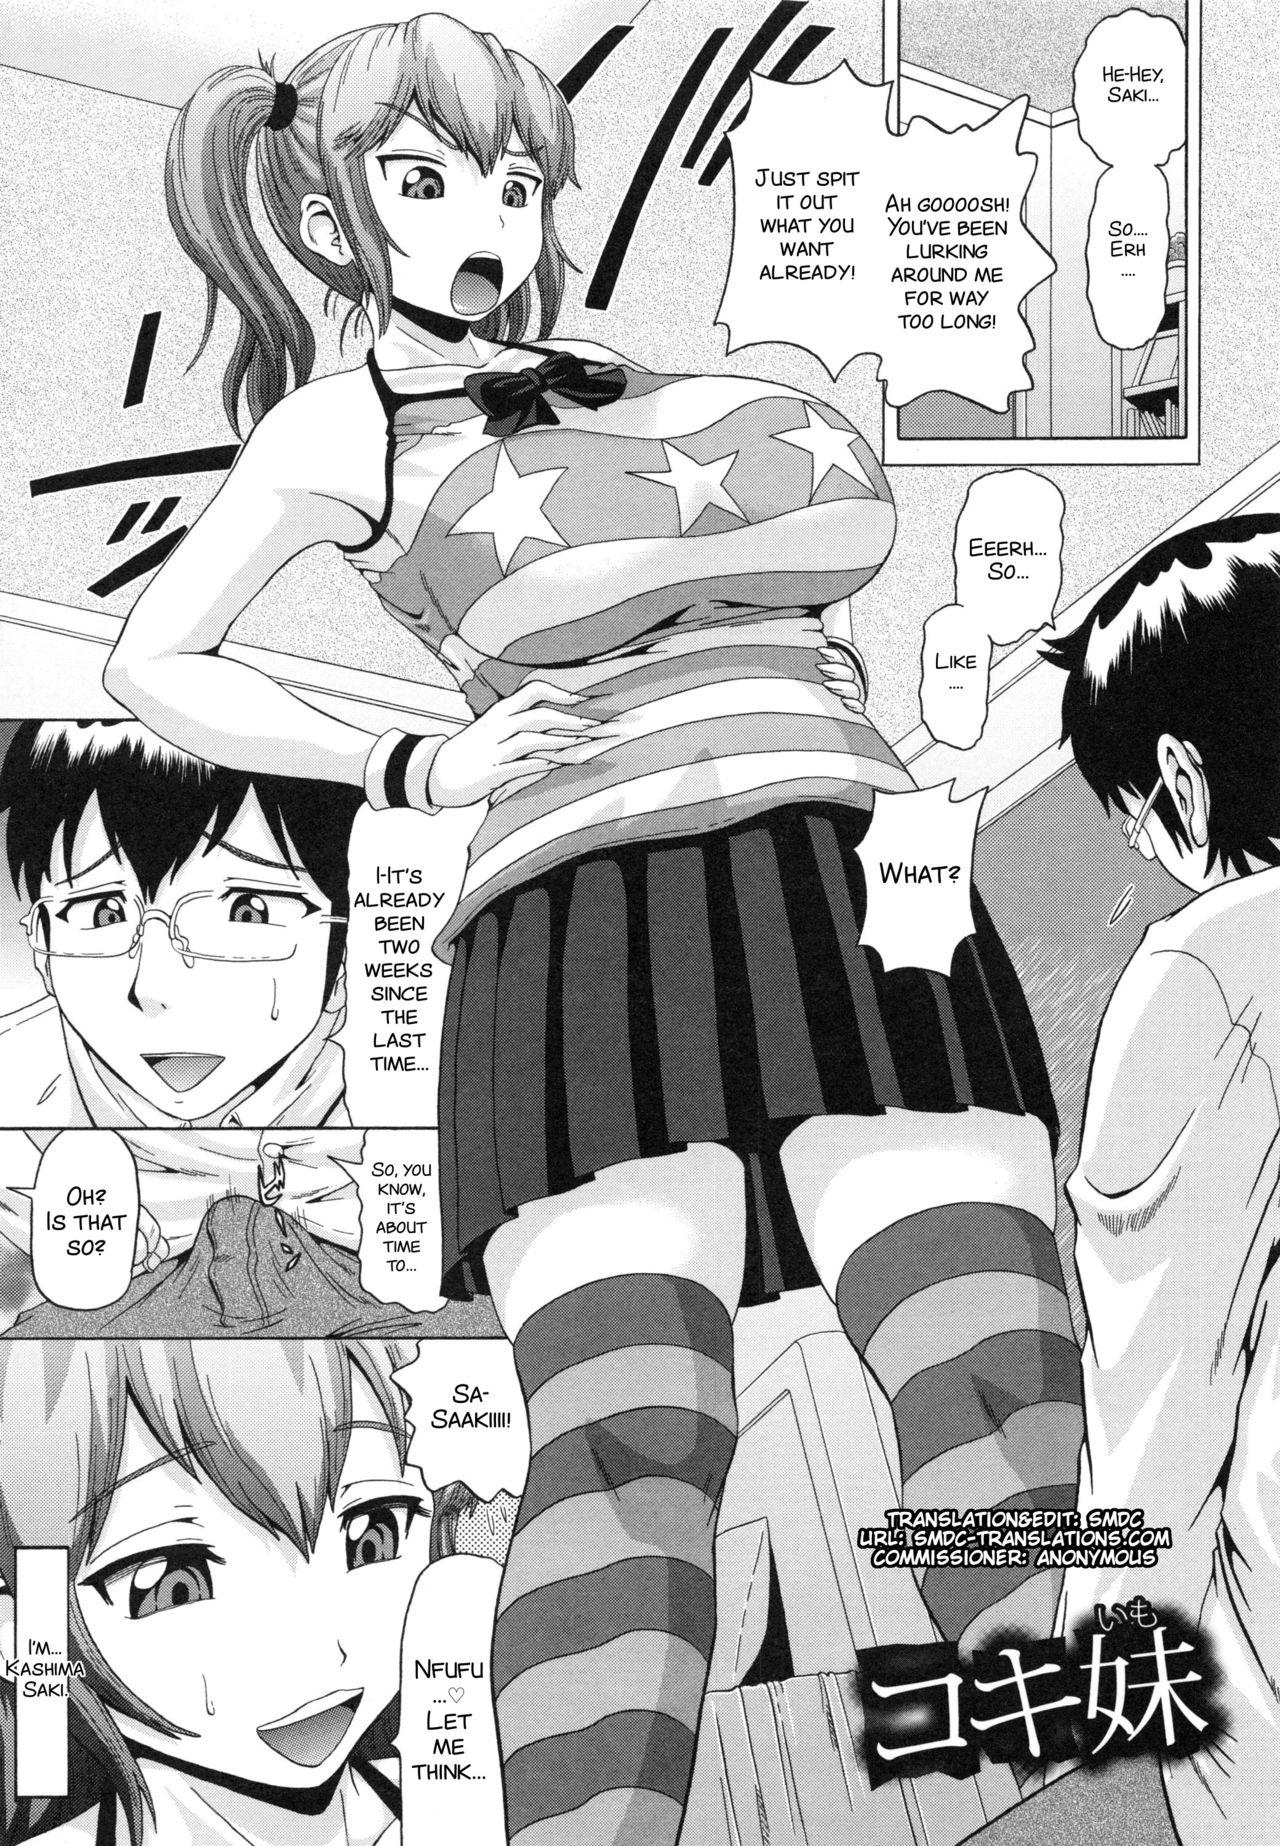 Young Tits Kokiimo Blowjob - Page 1